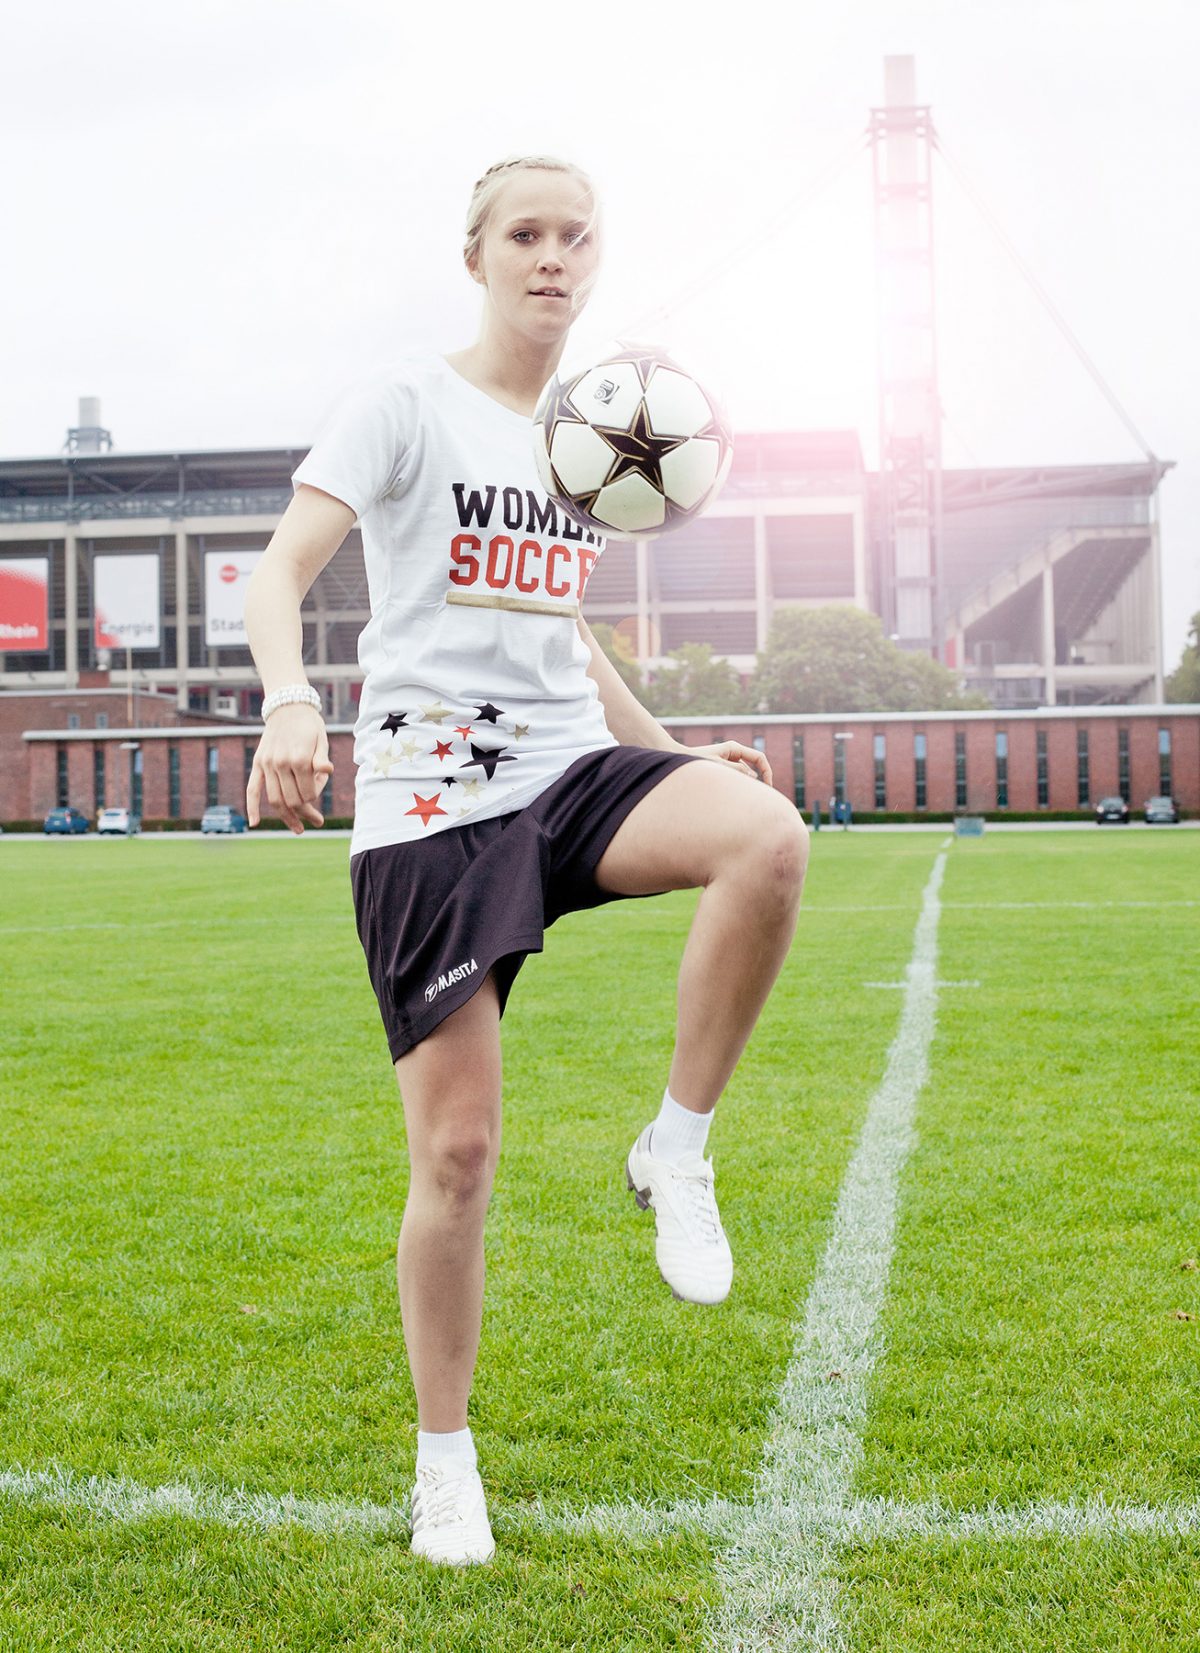 Fußballerin Kickt Portraitfotograf Köln